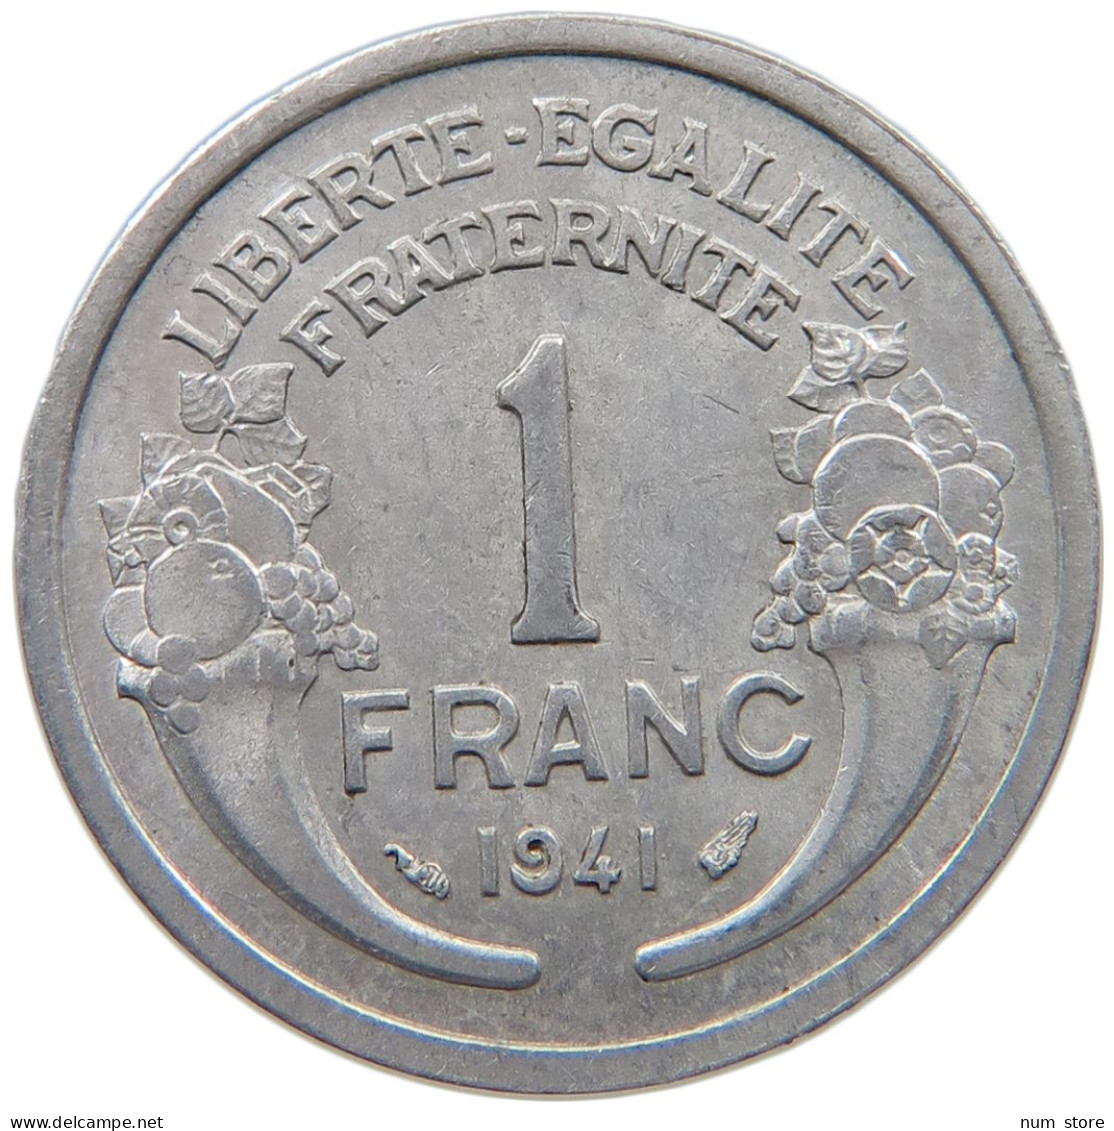 FRANCE 1 FRANC 1941 #a051 0359 - 1 Franc